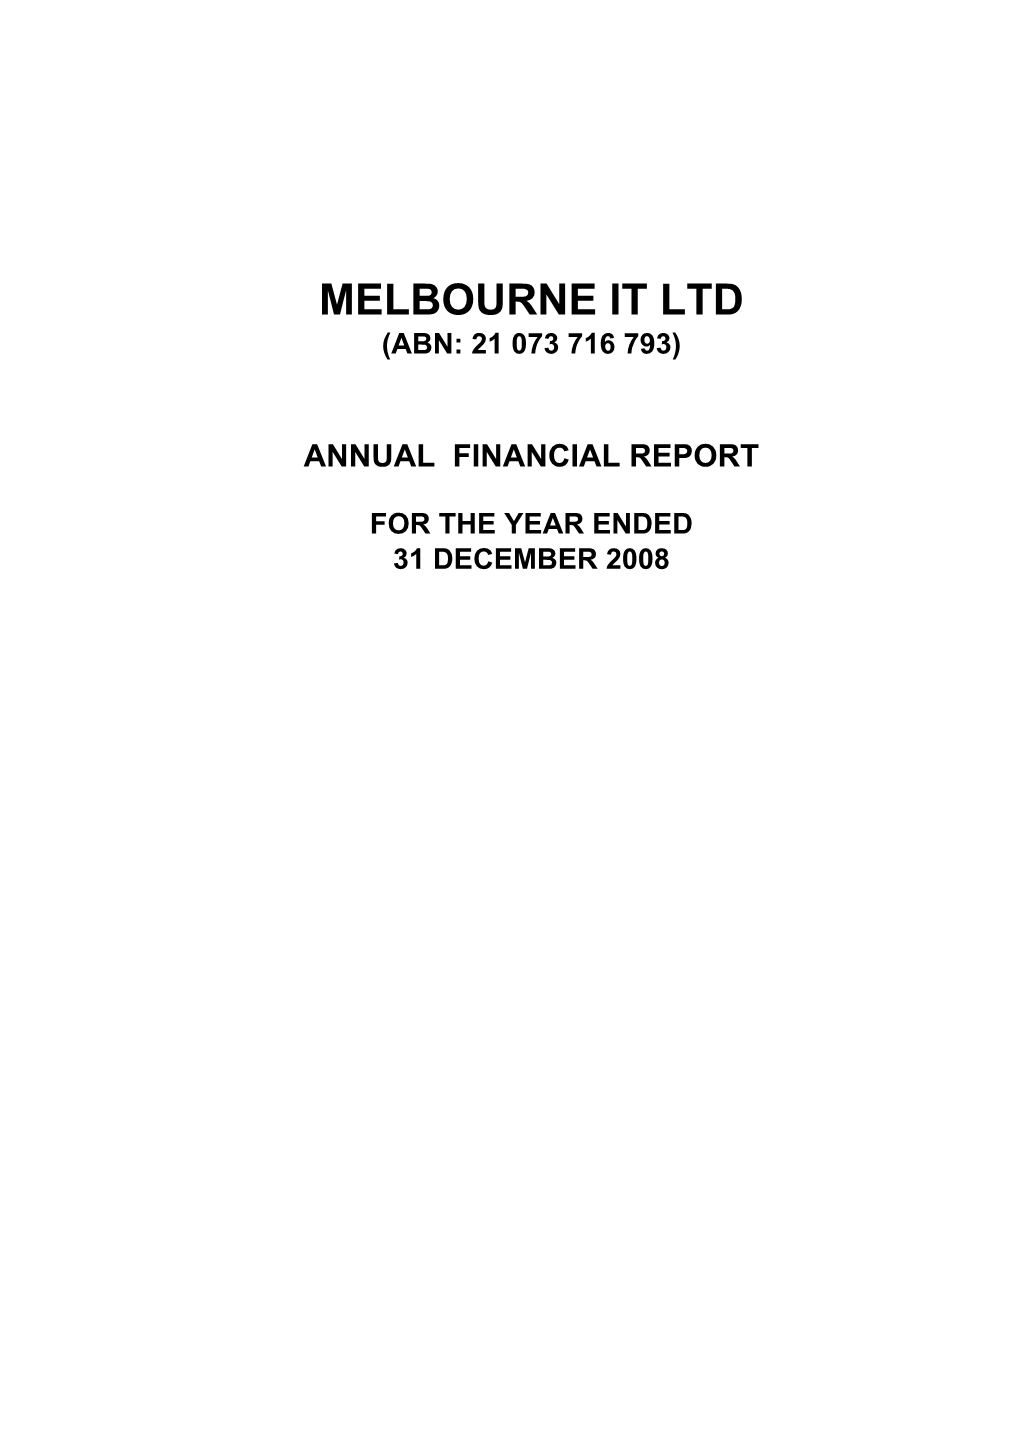 Directors Report Final.Xlsx